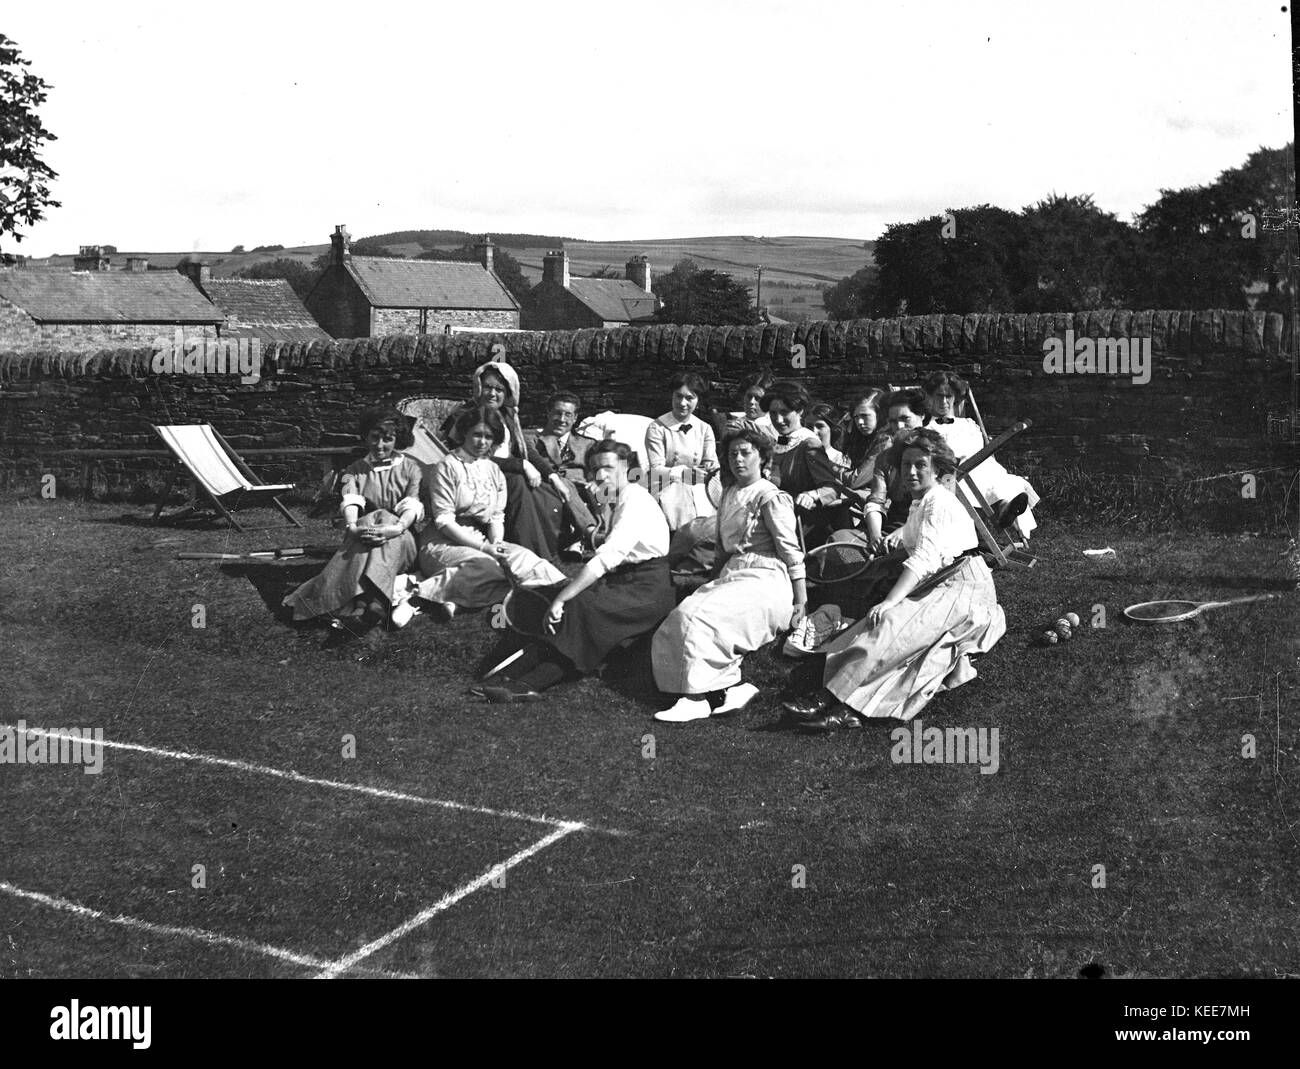 Un groupe de jeunes femmes de prendre une pause de jouer de tennis sur gazon et poser avec un homme et des femmes, allendale, Northumberland, England, 1911. Photo prise par Tony henshaw à partir de la filiale en propriété négatif original. Banque D'Images